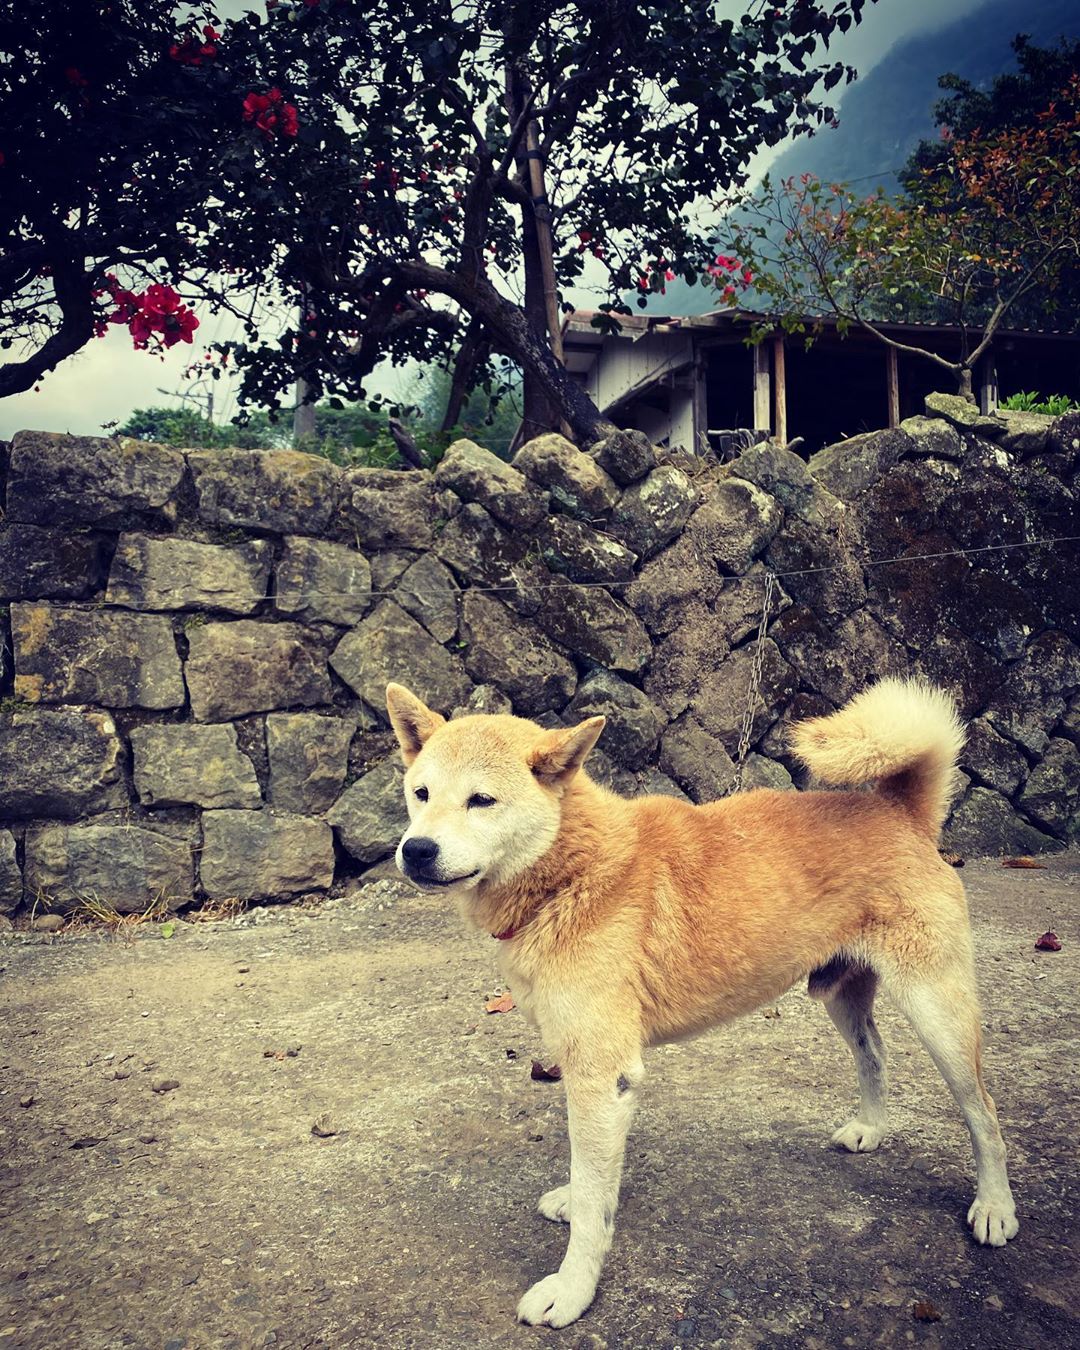 ⠀⠀⠀⠀⠀⠀⠀⠀⠀⠀⠀阿里山上的犬犬真可愛❤️❤️-⠀⠀⠀⠀⠀⠀⠀⠀⠀⠀⠀⠀感謝 @dongpigfish  分享的美照⛰️-⠀⠀...